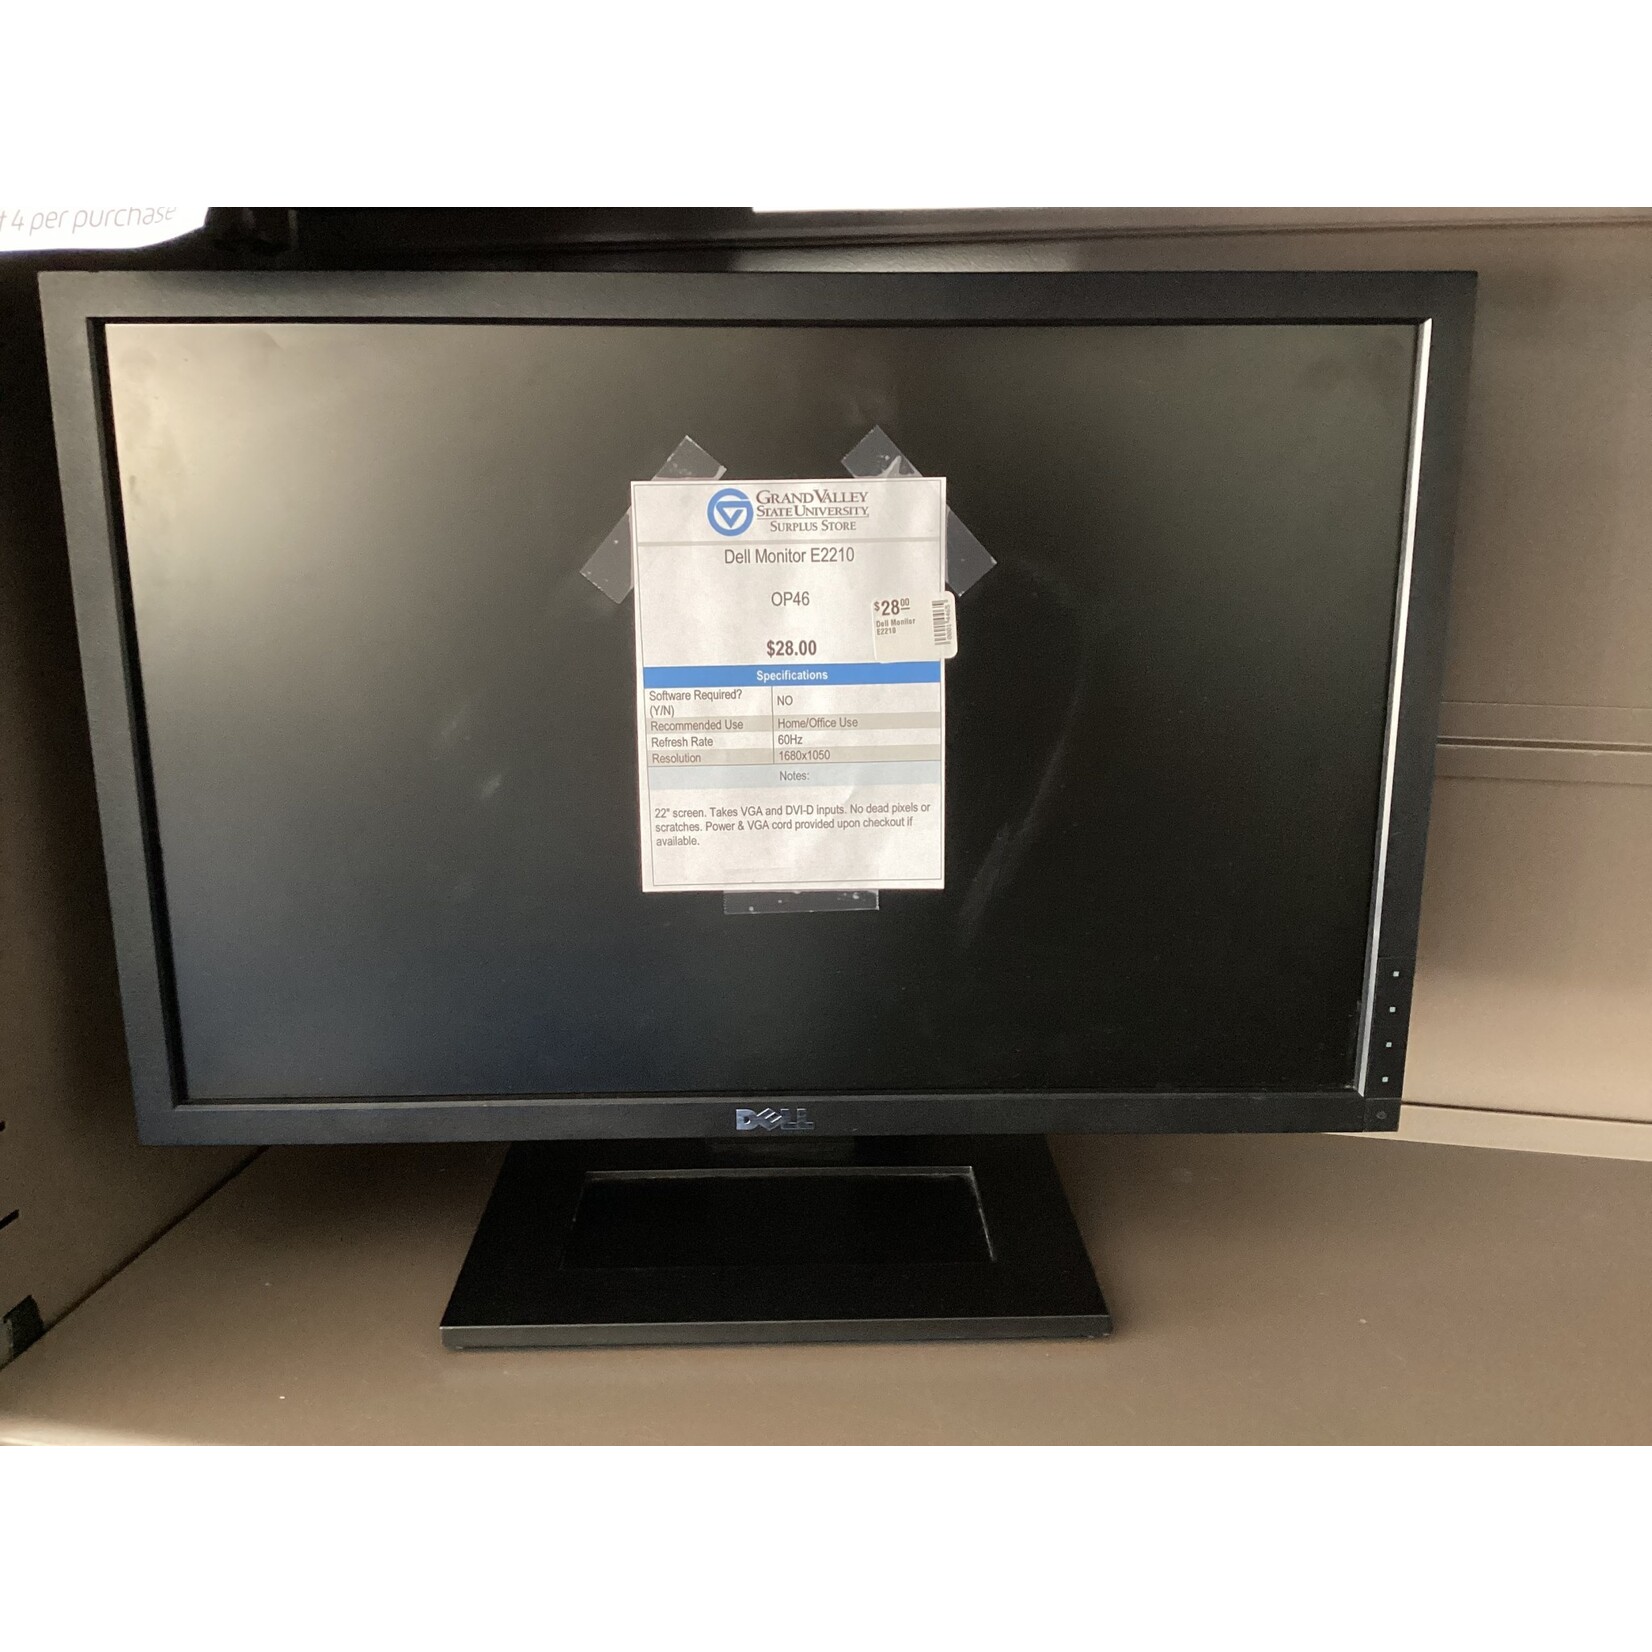 Dell Monitor E2210